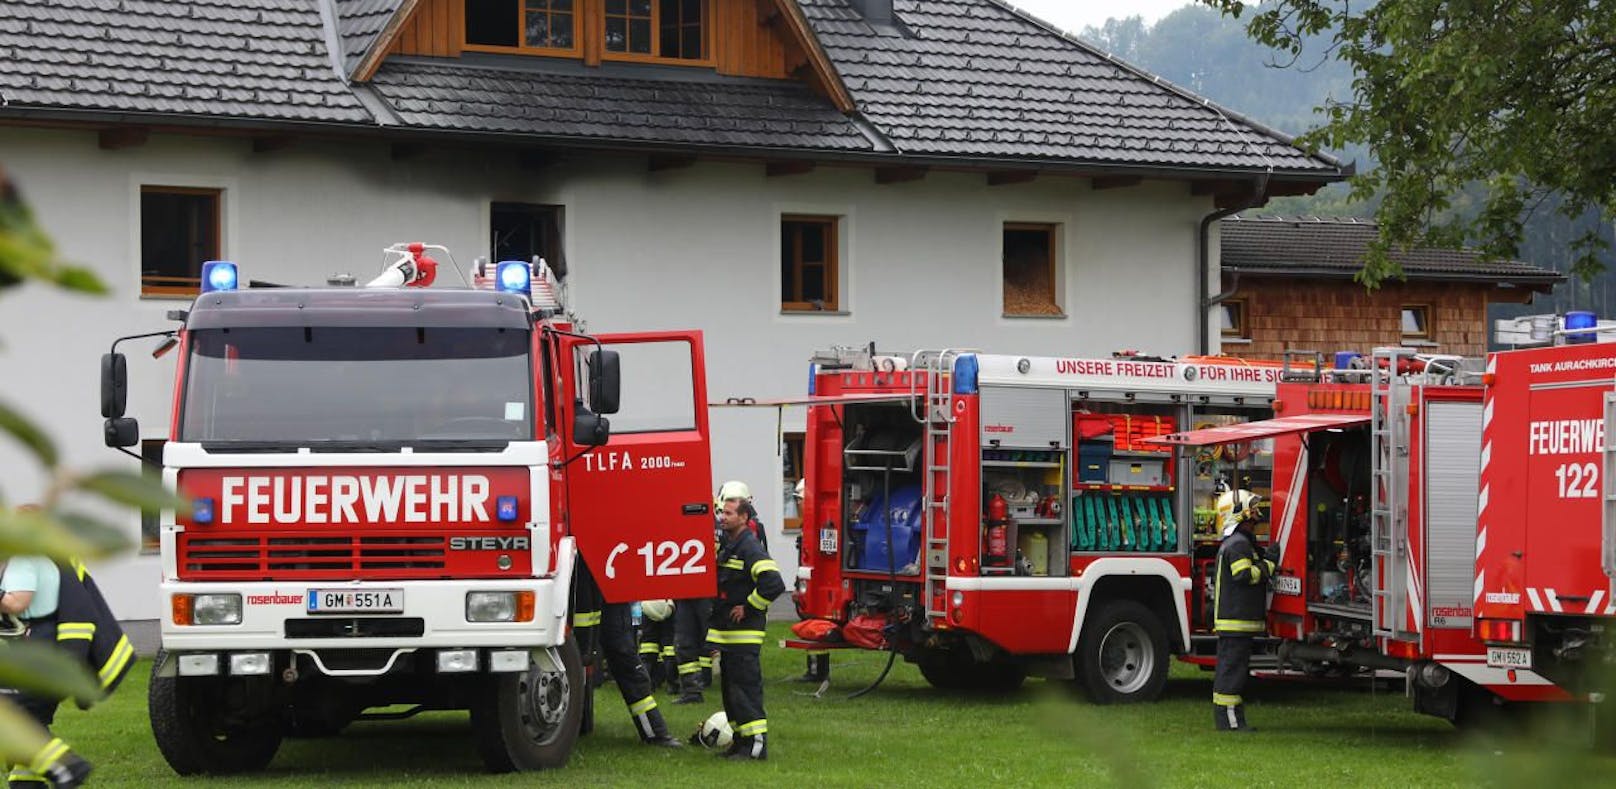 Feuerwehr-Chef bekämpft Brand am eigenen Hof